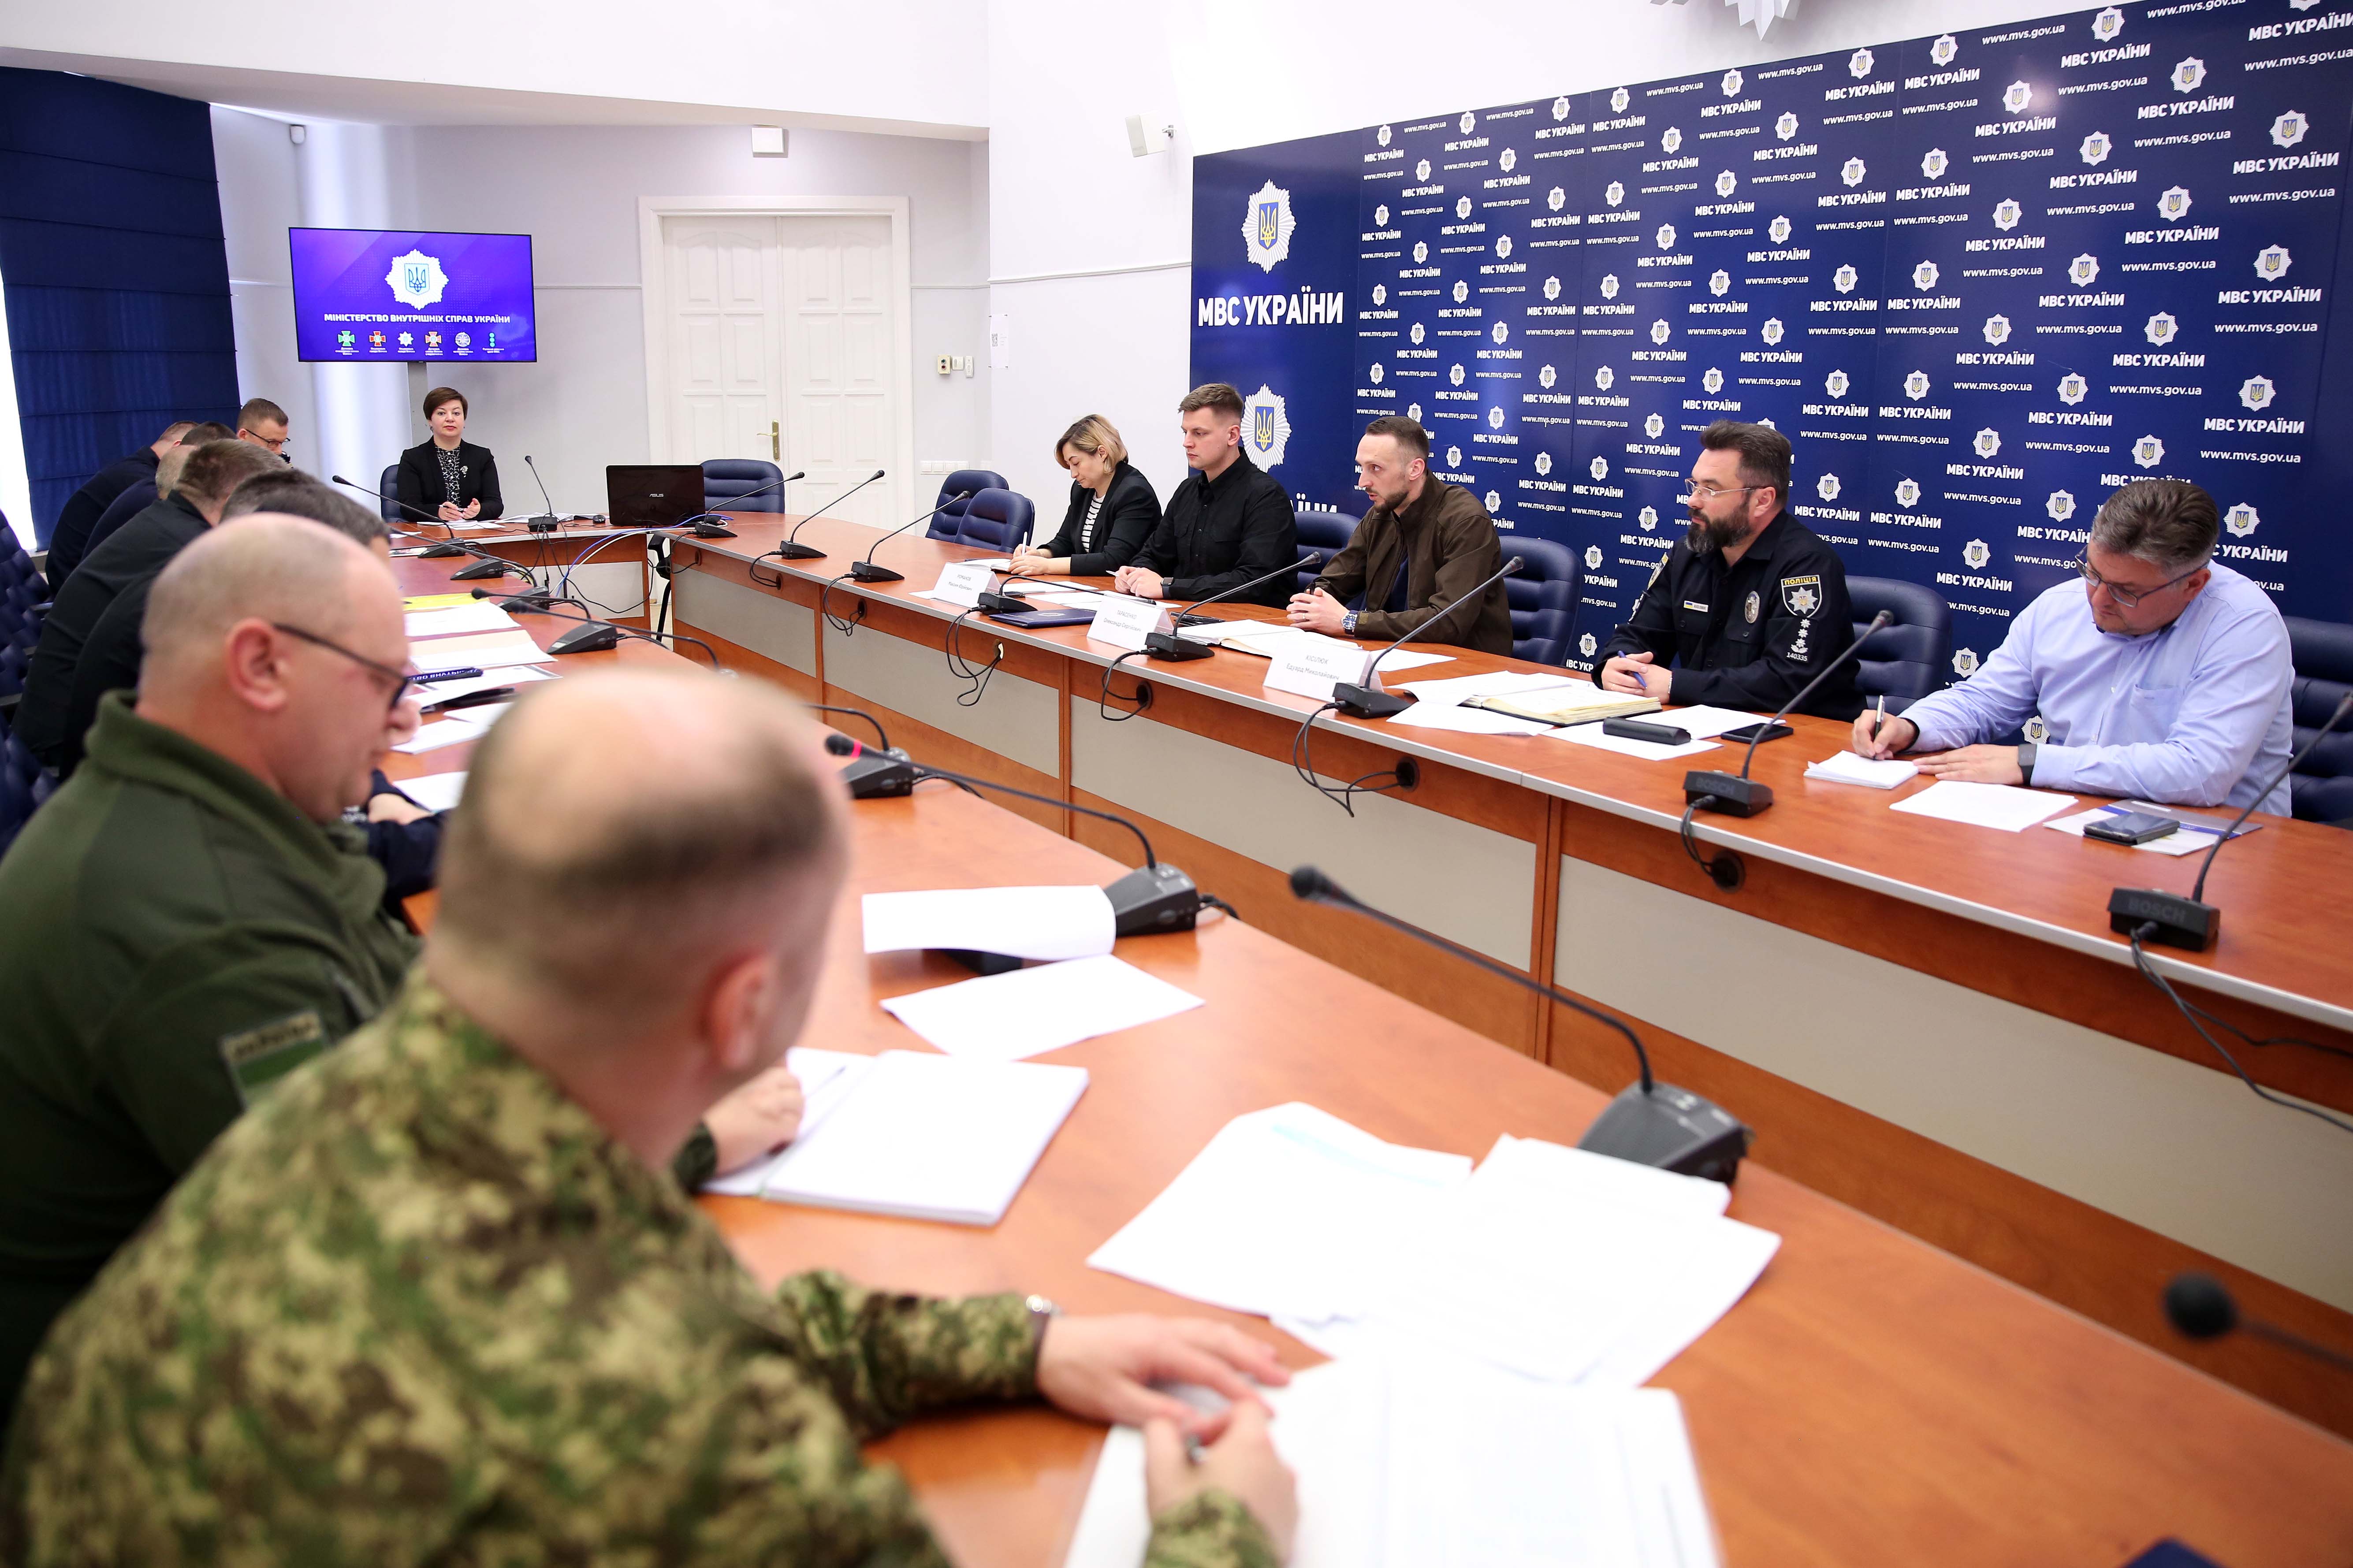 Олександр Тарасенко: Наукова діяльність повинна бути спрямована виключно на практичні потреби підрозділів системи МВС